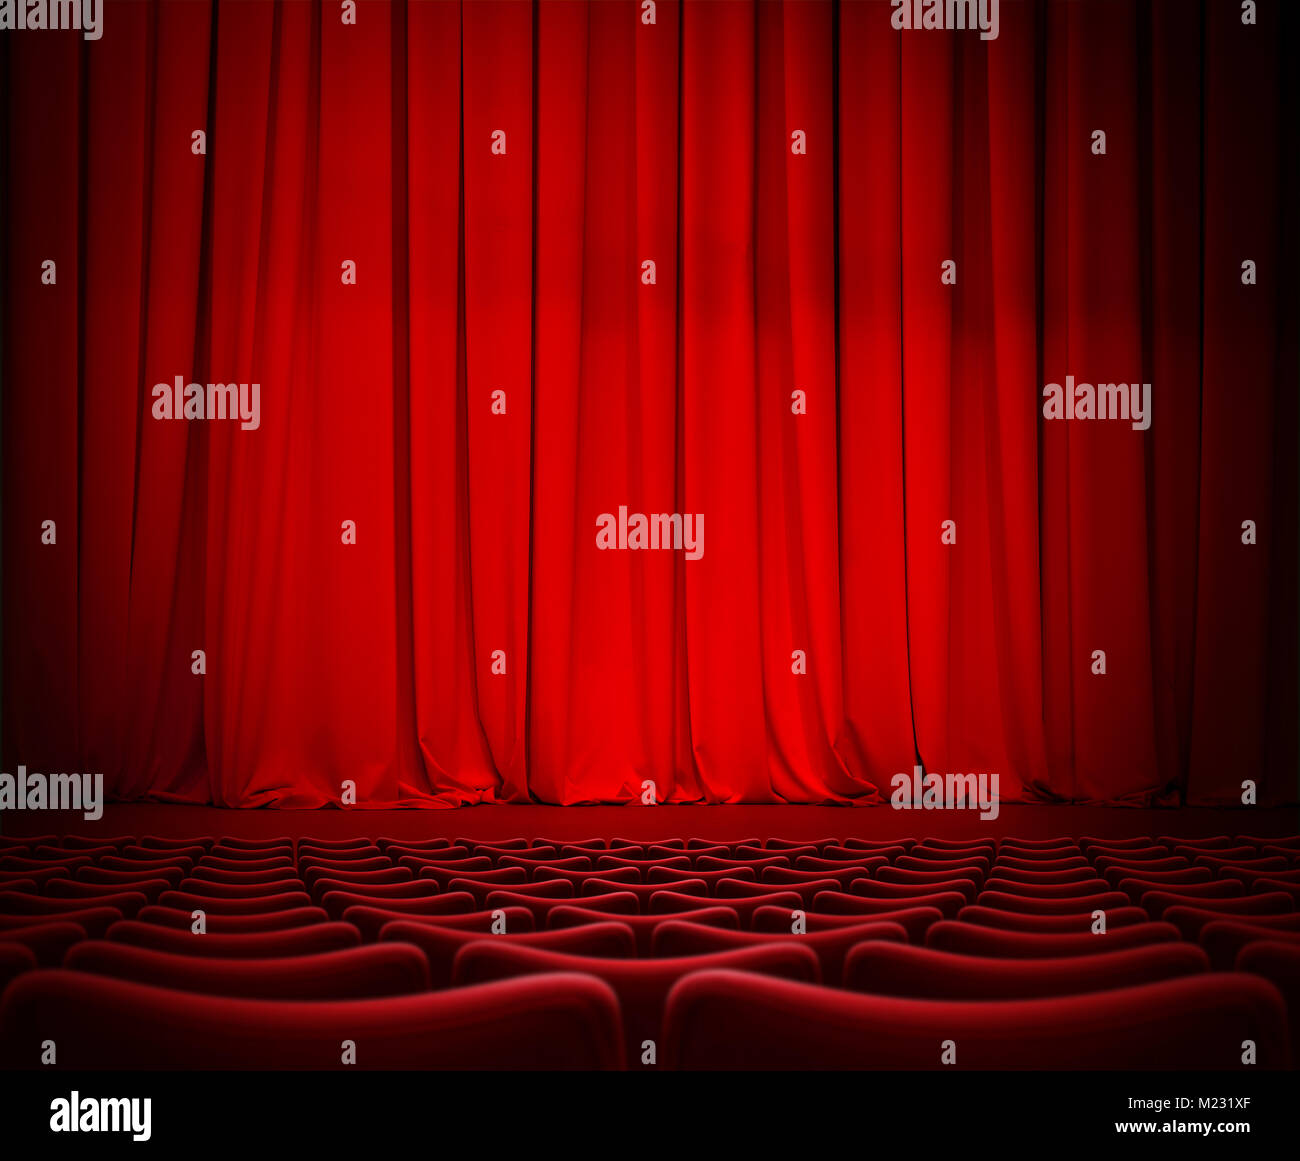 Theater rote Vorhang auf der Bühne mit Samt Sitze 3 Abbildung d Stockfoto